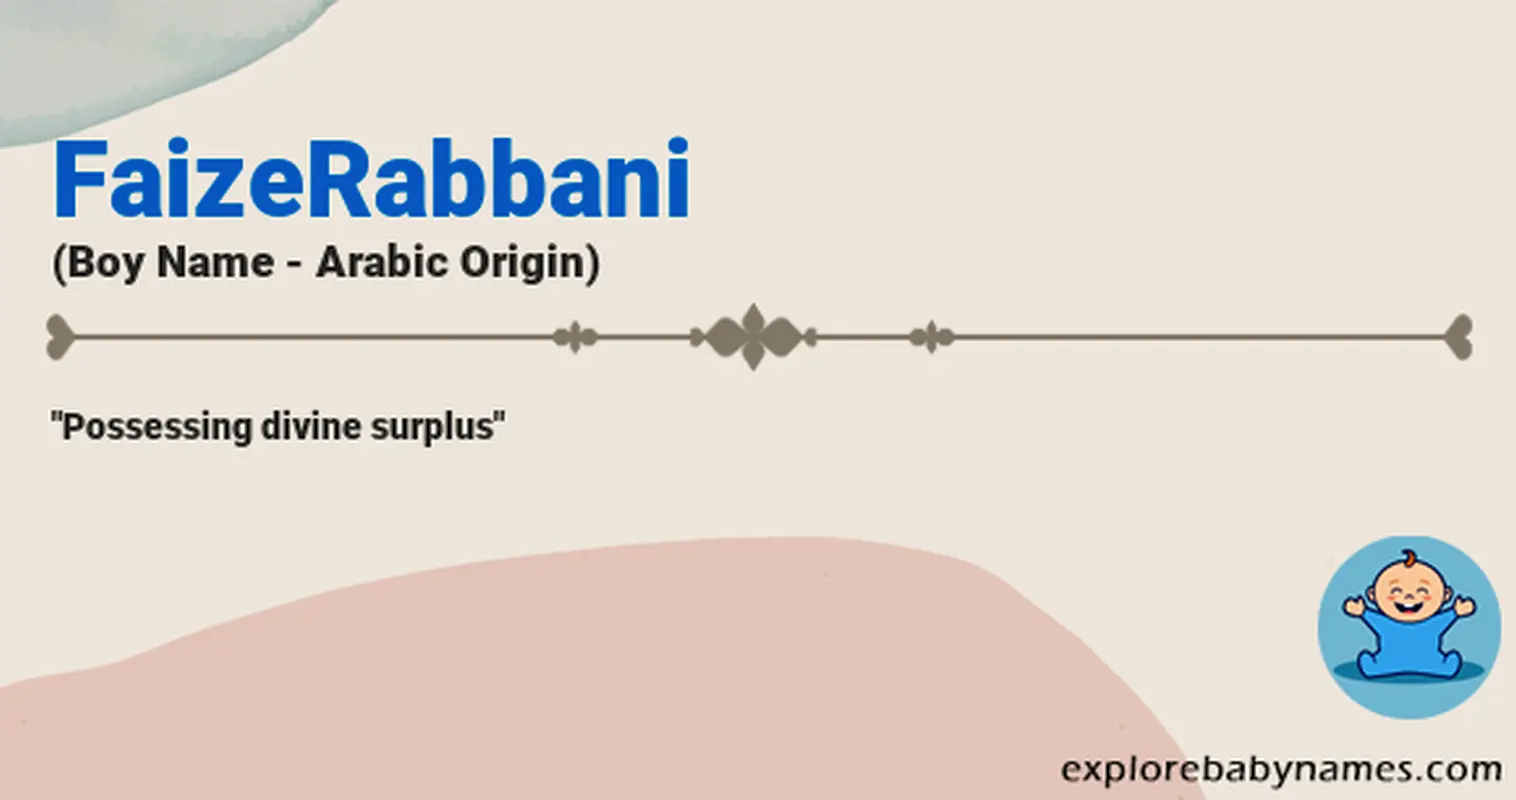 Meaning of FaizeRabbani